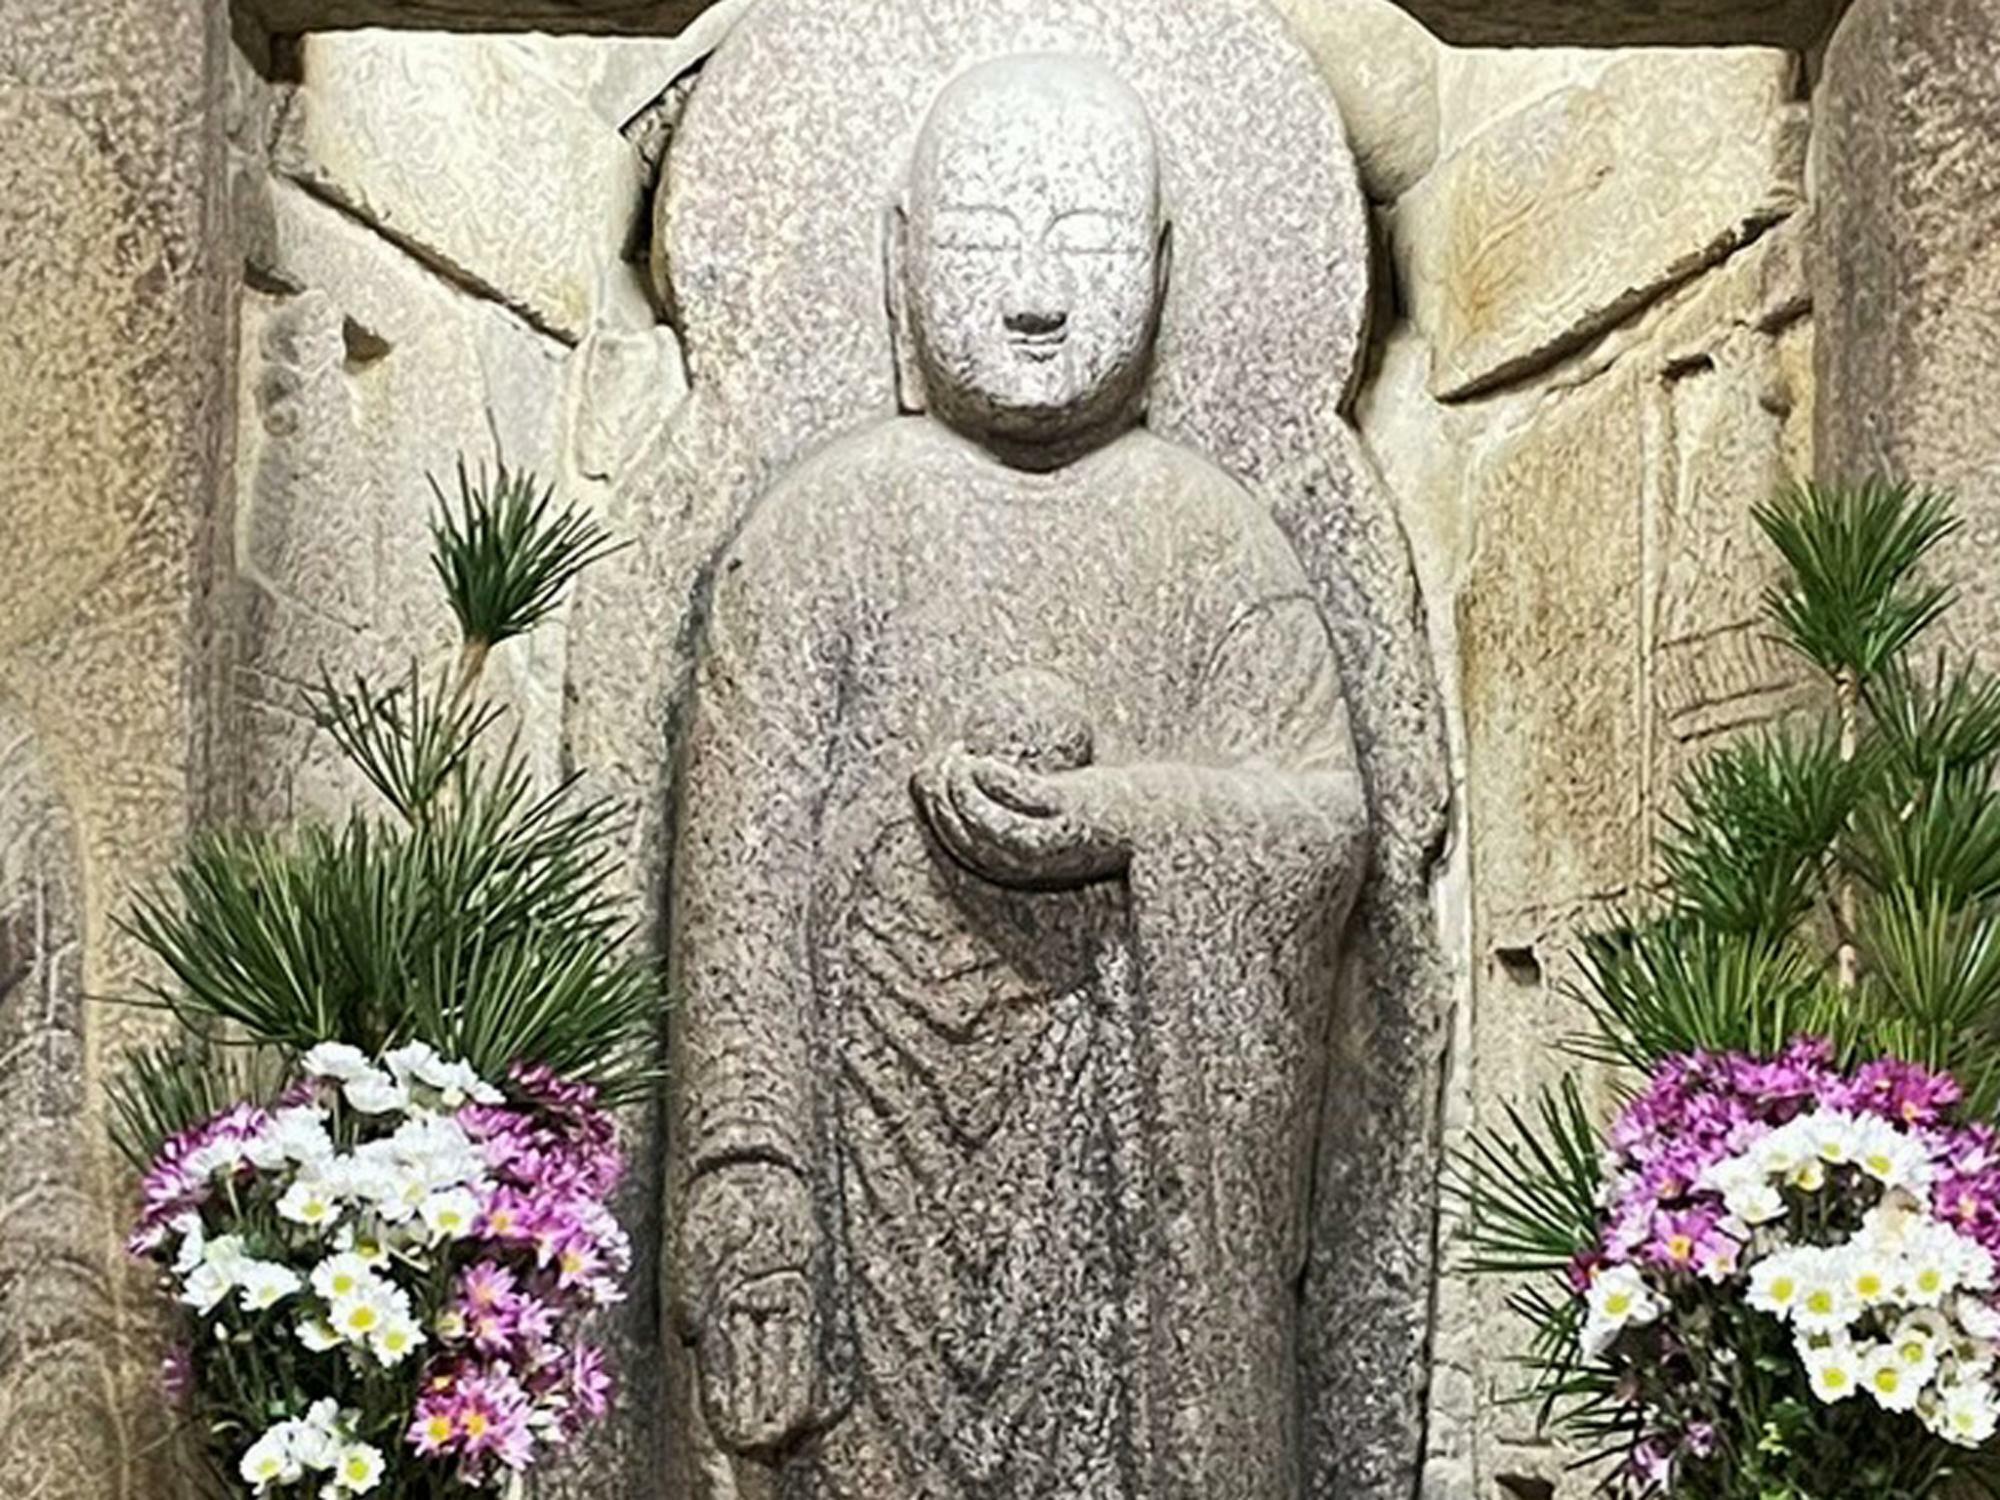 地蔵菩薩像